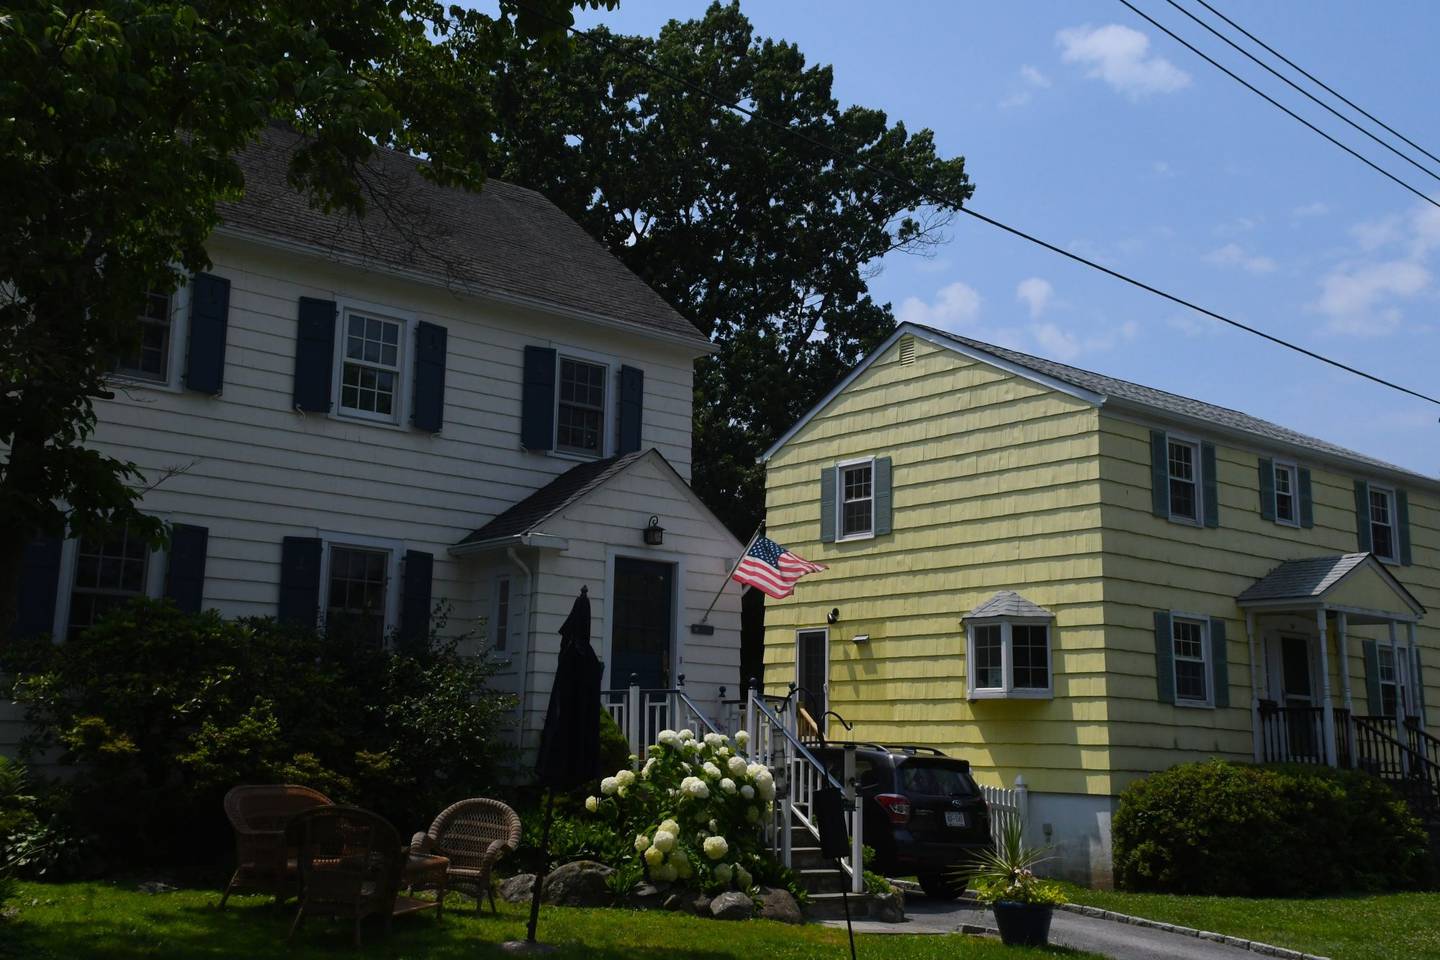 Casas em Westchester County em Larchmont, New York, continuam sendo procuradas por moradores de Manhattan